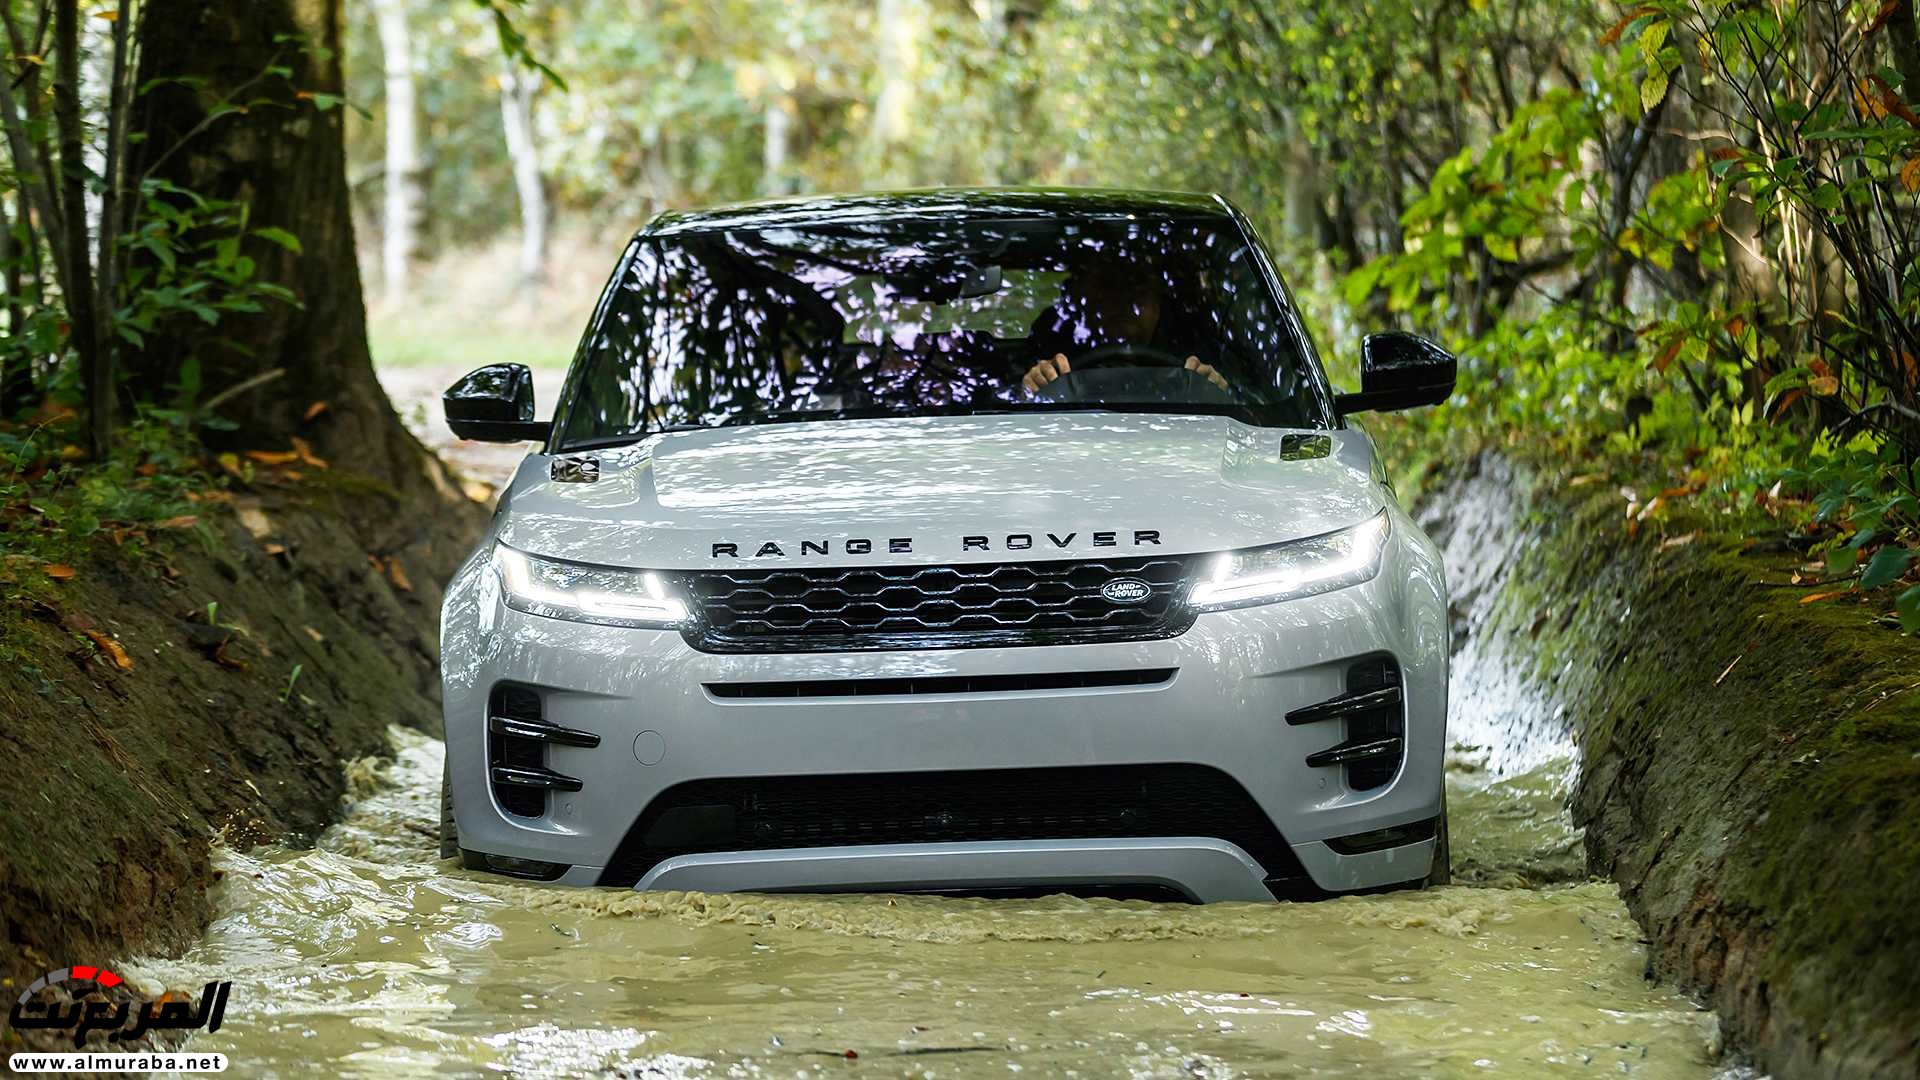 اهم 7 معلومات عن رنج روفر ايفوك 2020 الجديدة كلياً Range Rover Evoque 11